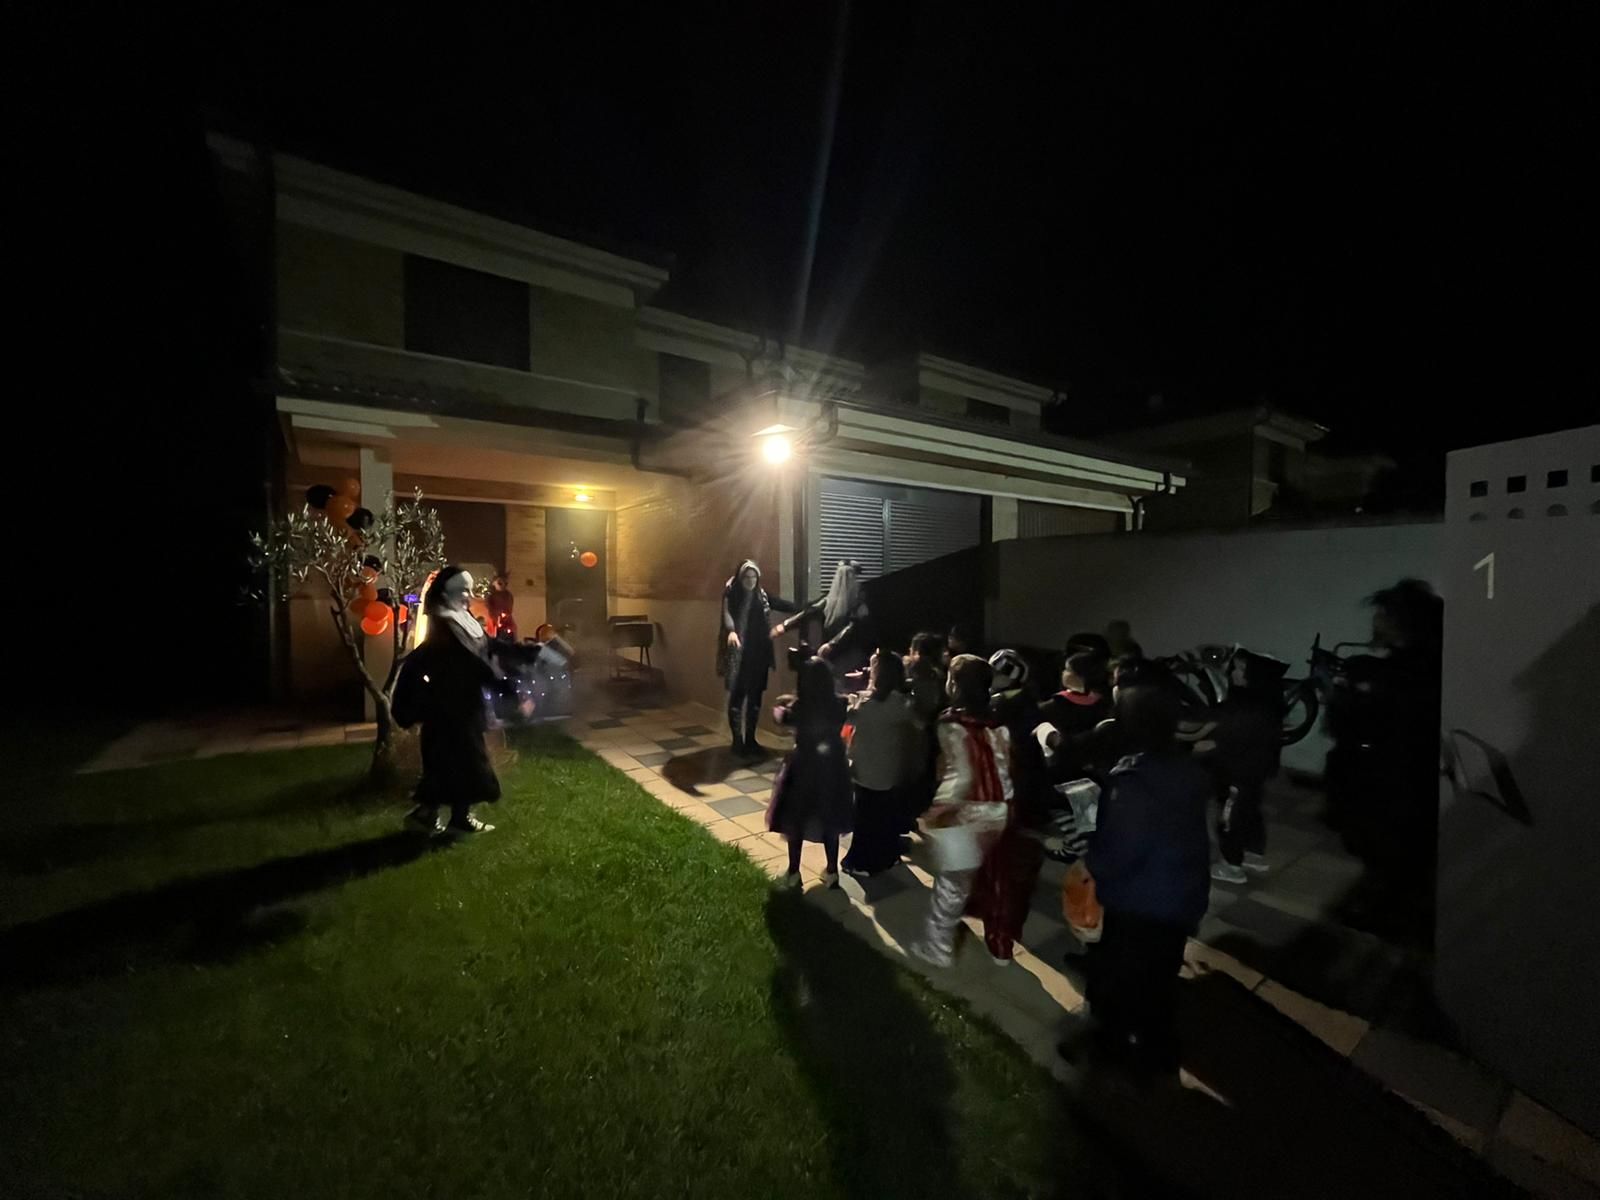 GALERÍA| Así celebran Halloween en Morales, Moraleja y Villaralbo